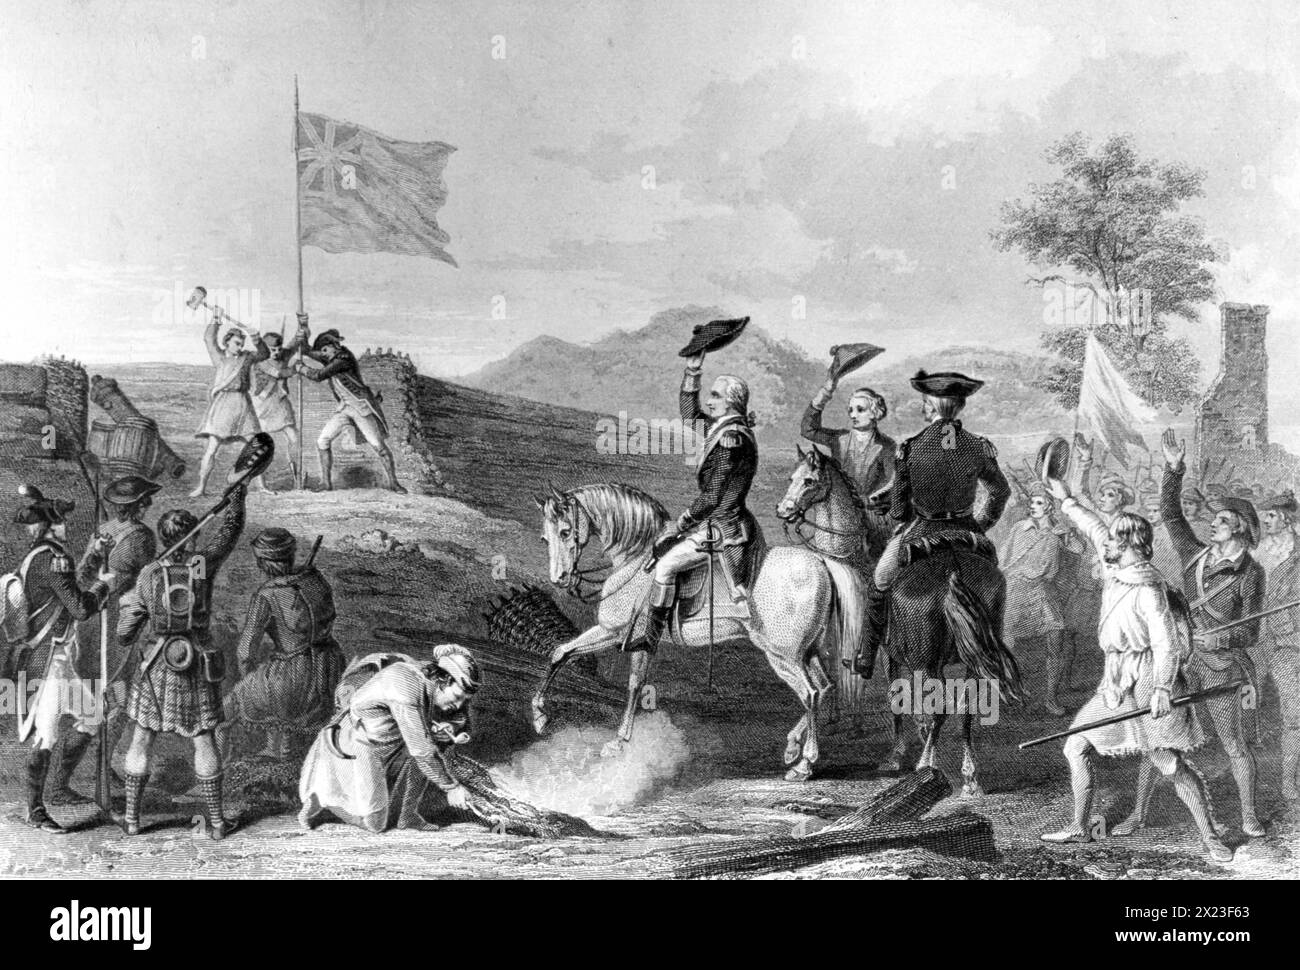 Pittsburgh (Pennsylvania): Gravur, die Col George Washington während des Französisch- und Indianerkrieges die britische Flagge über den Überresten von Fort Duquesne hisst. 11/25/1758 Stockfoto